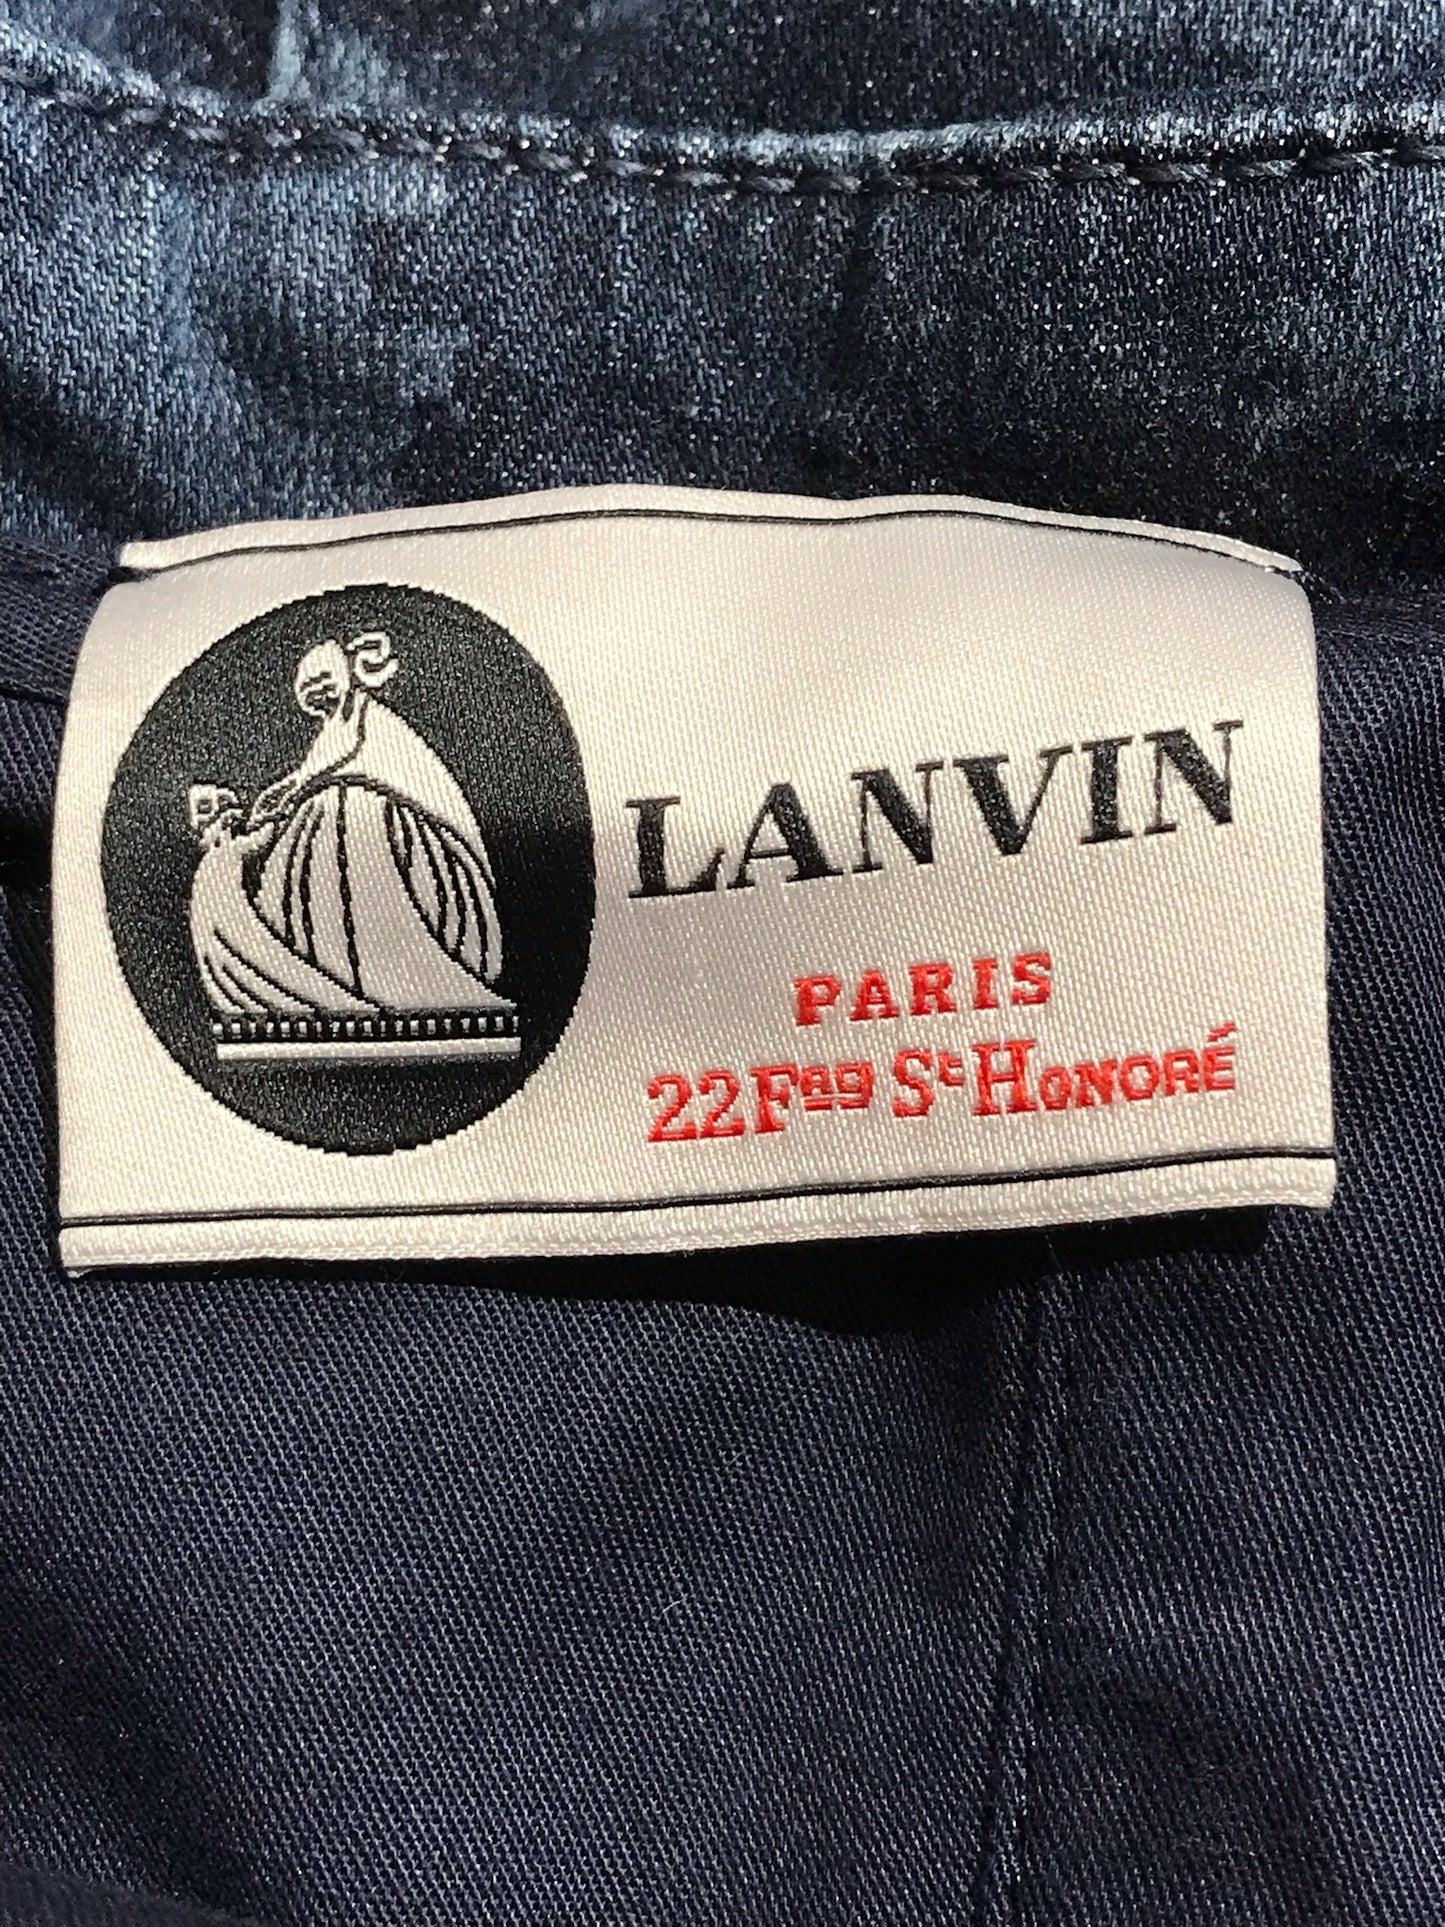 Robe Lanvin en jeans T.36